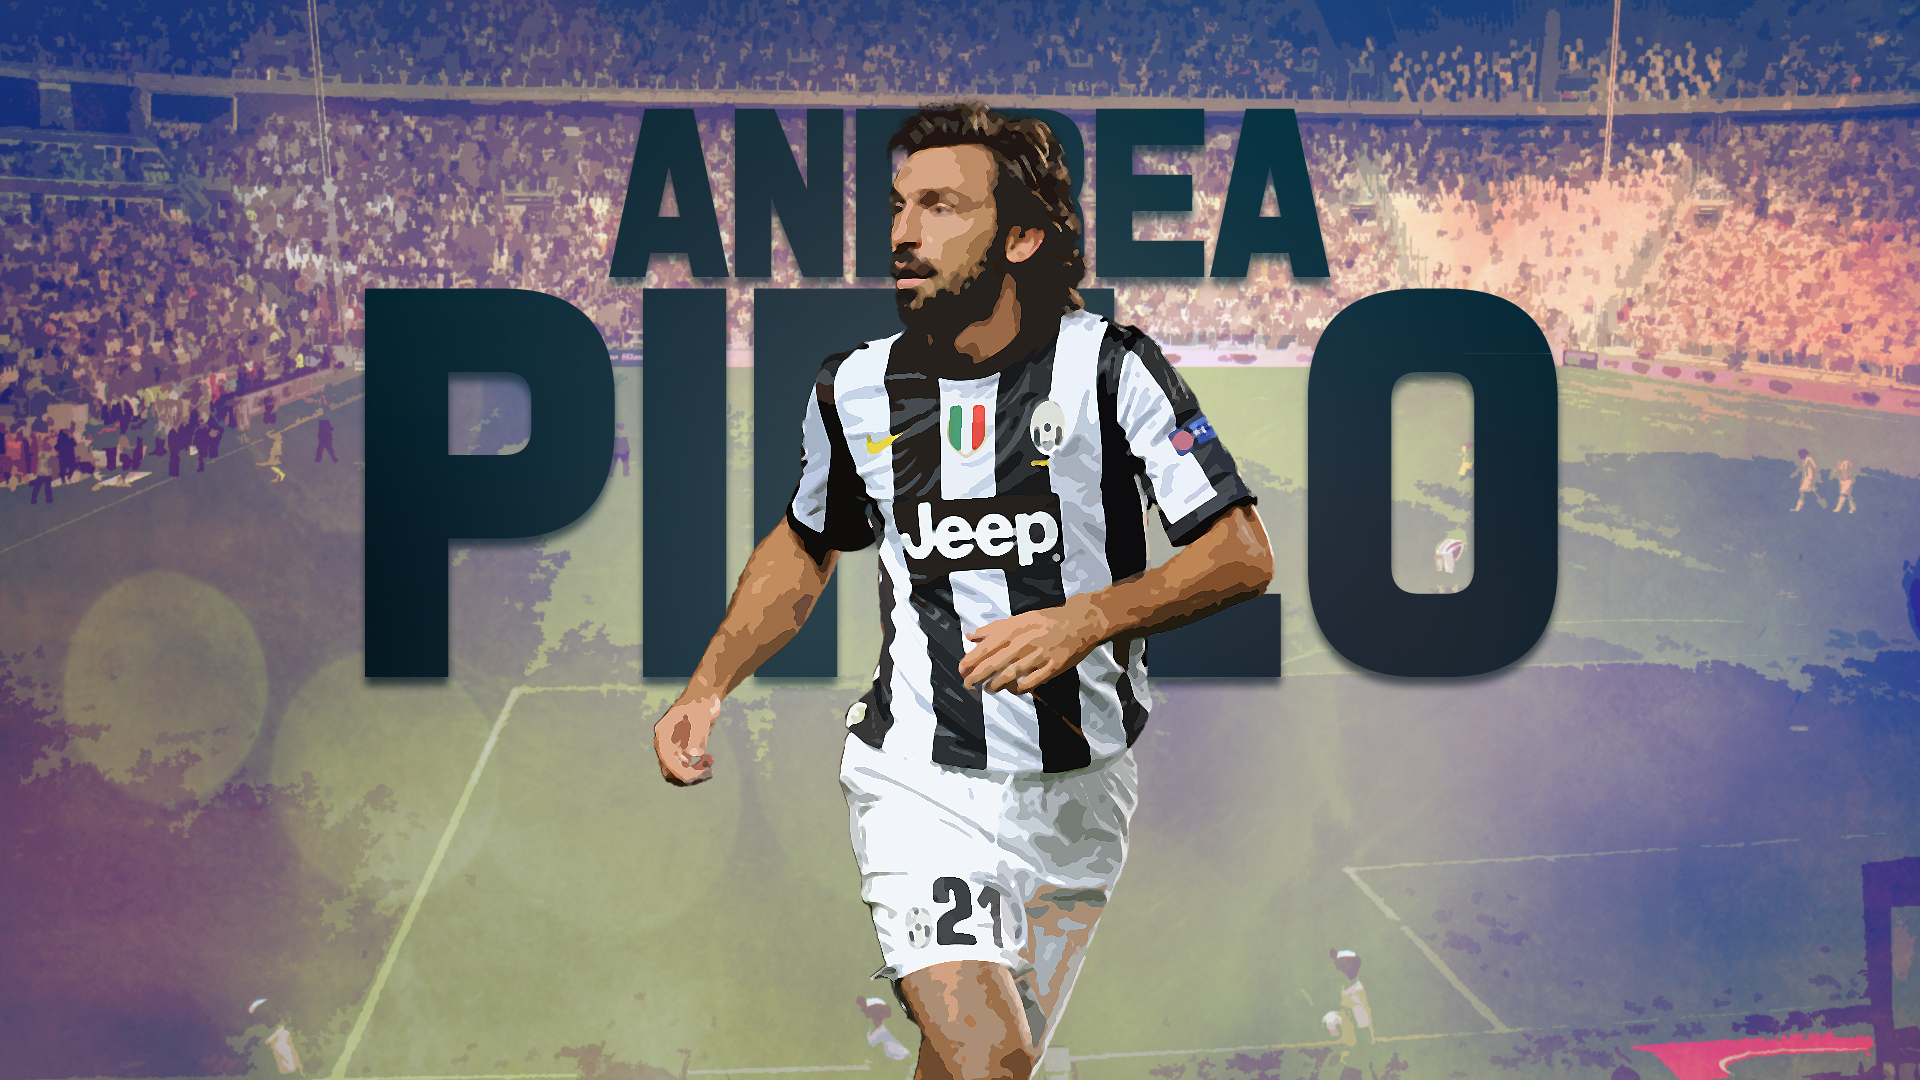 Descarga gratuita de fondo de pantalla para móvil de Fútbol, Deporte, Andrea Pirlo, Juventus F C.